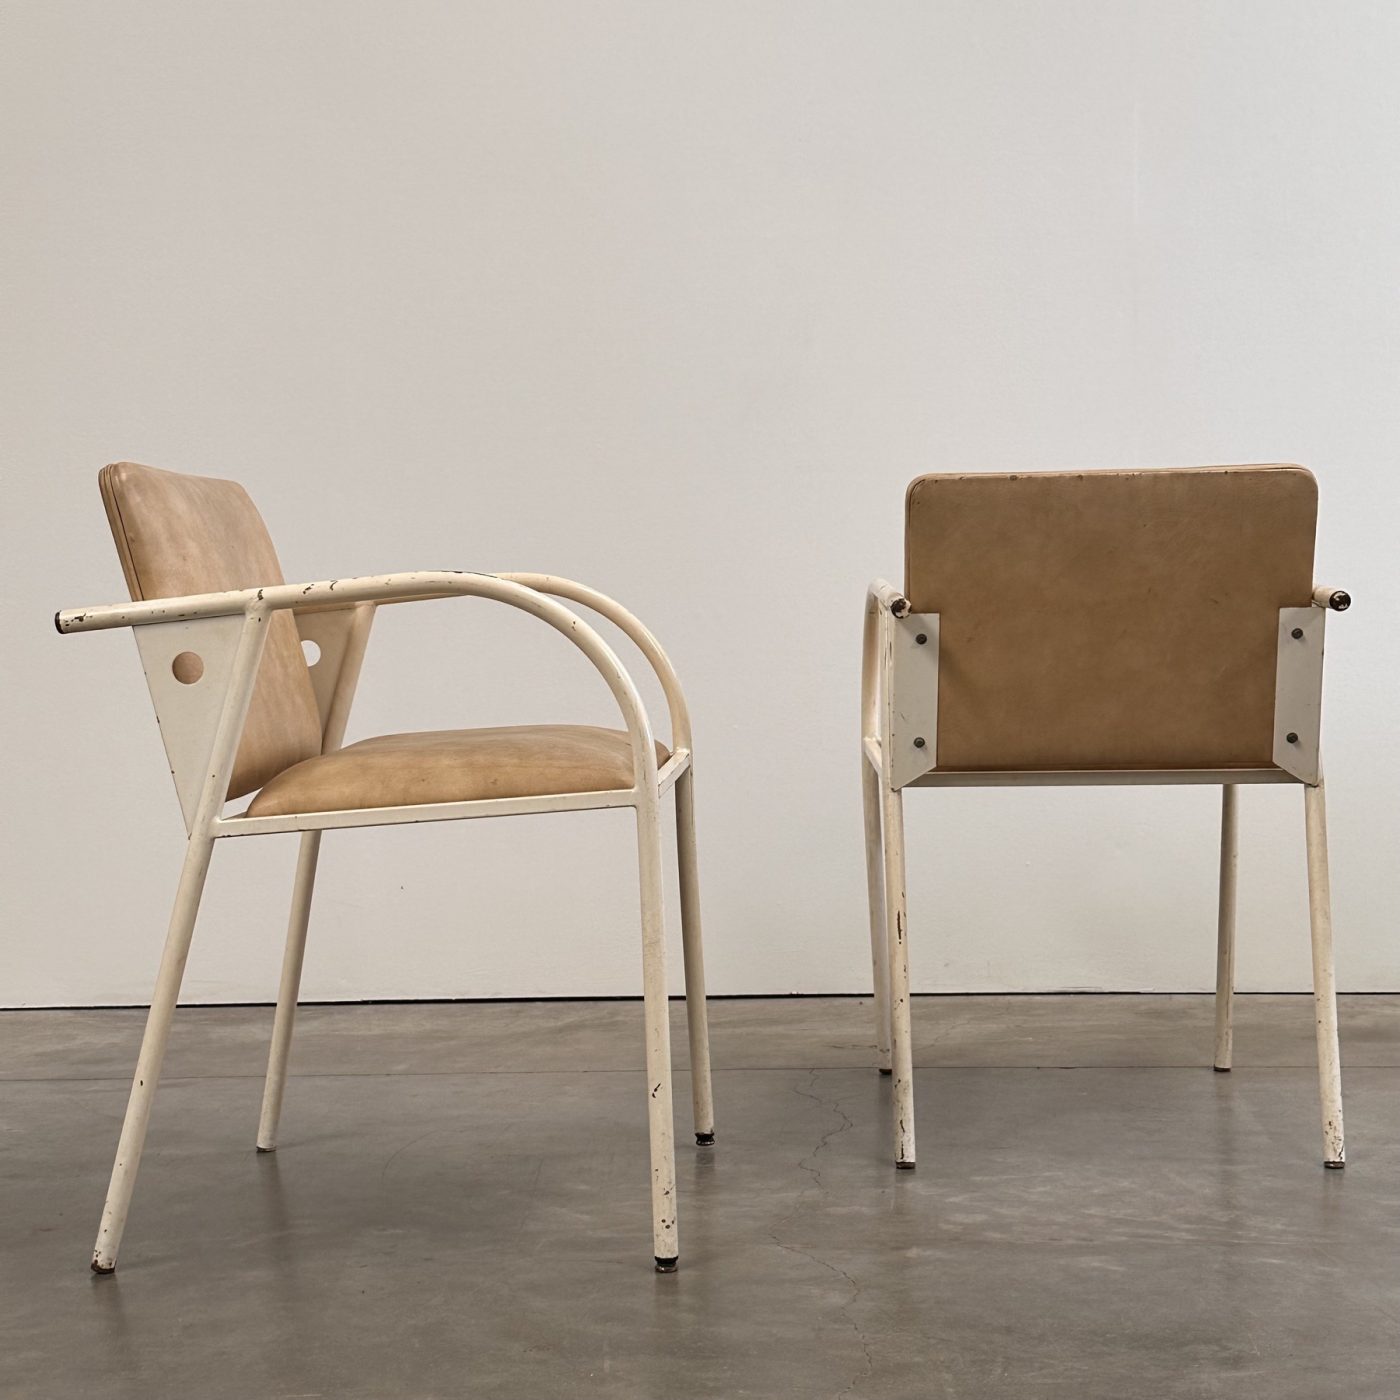 objet-vagabond-metal-armchairs0006